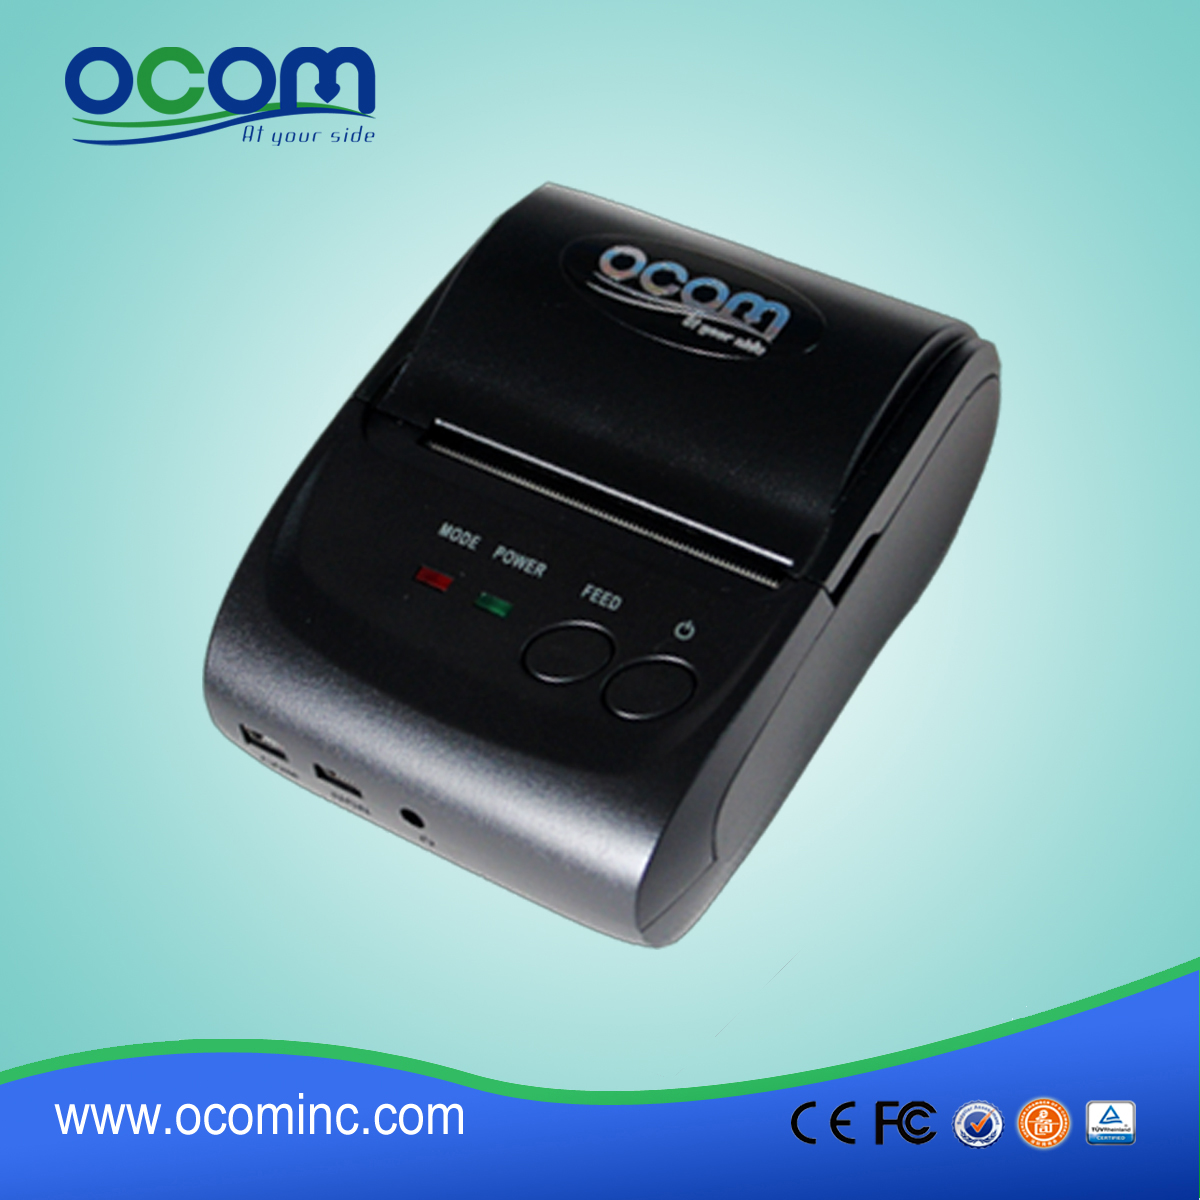 2 Pulgadas OEM Disponible para Android iOS compatibles térmica Mini impresora portátil en China OCPP-M05